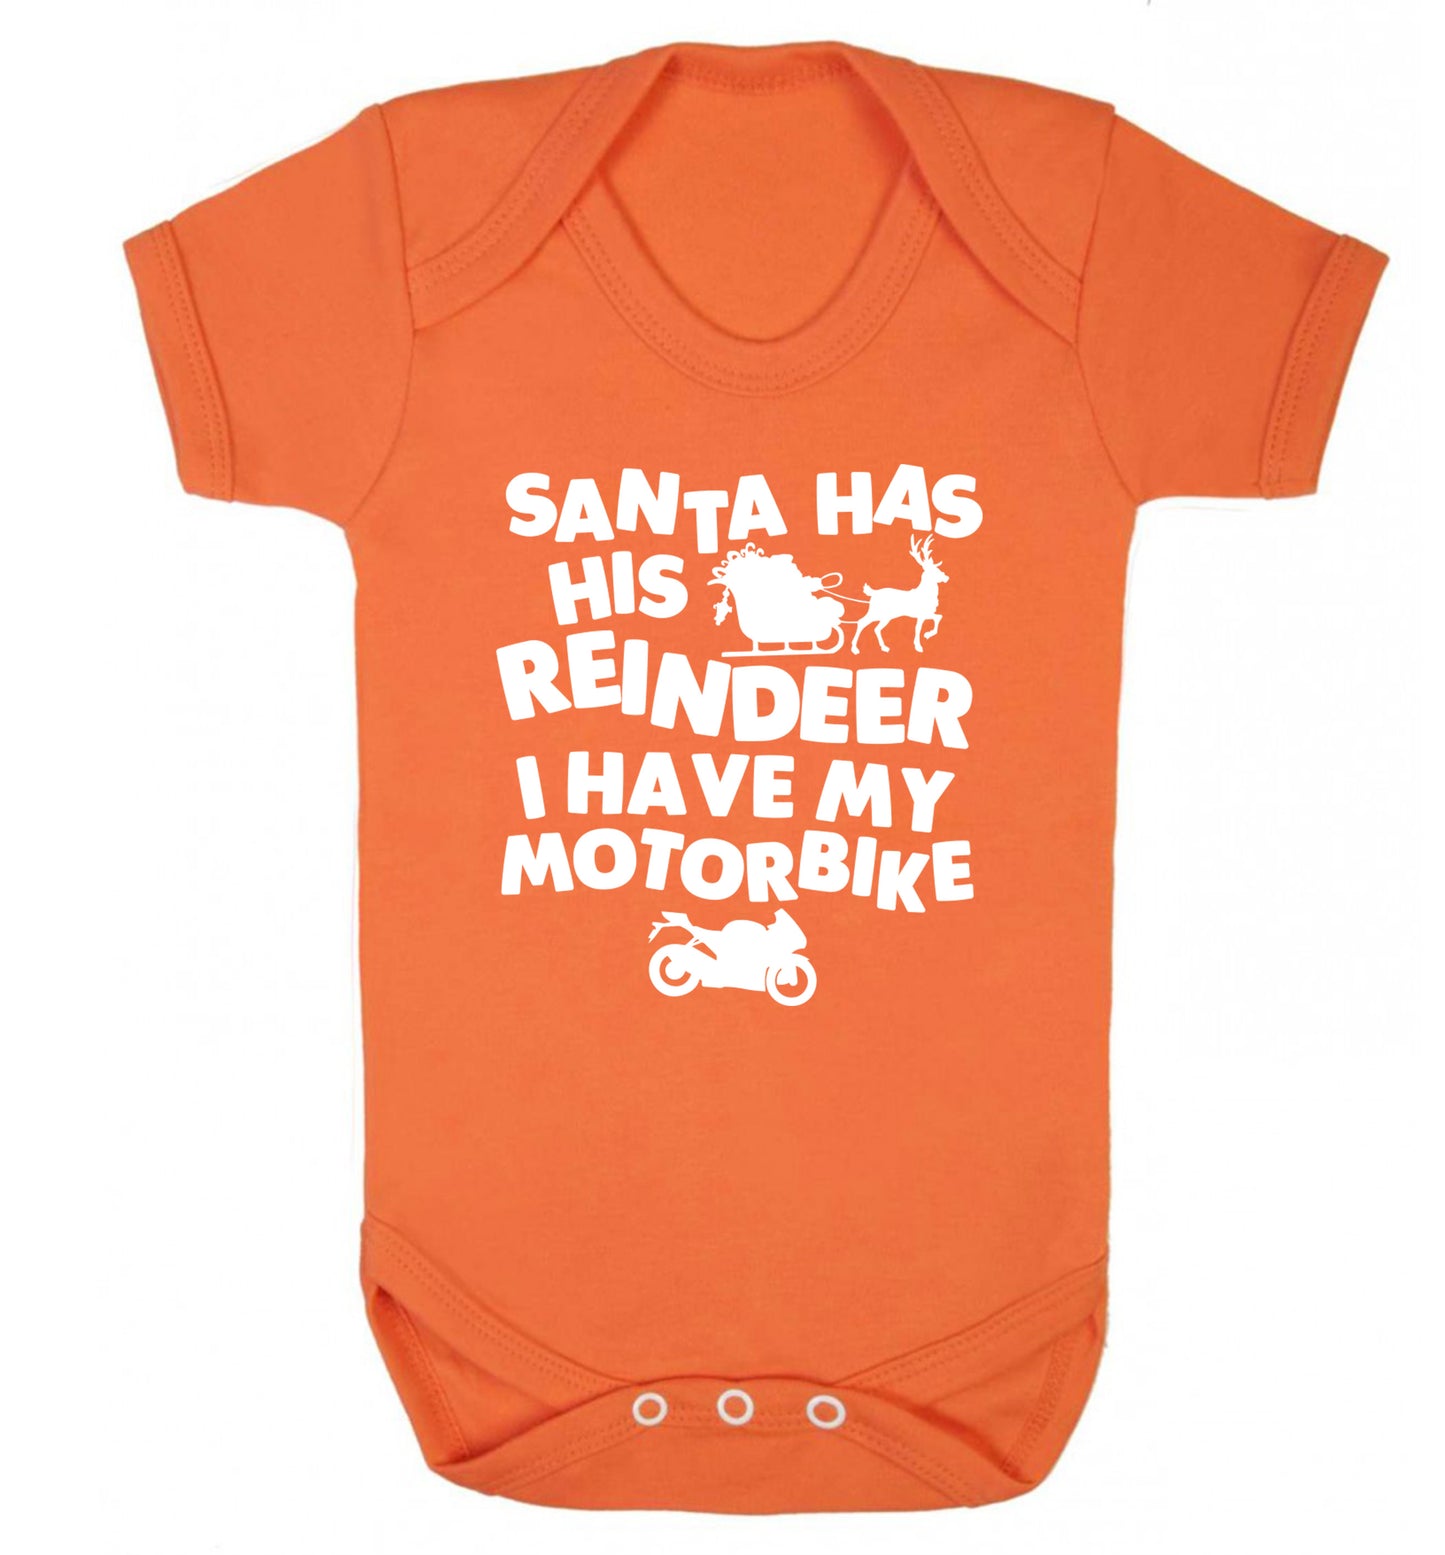 Santa has his reindeer I have my motorbike Baby Vest orange 18-24 months